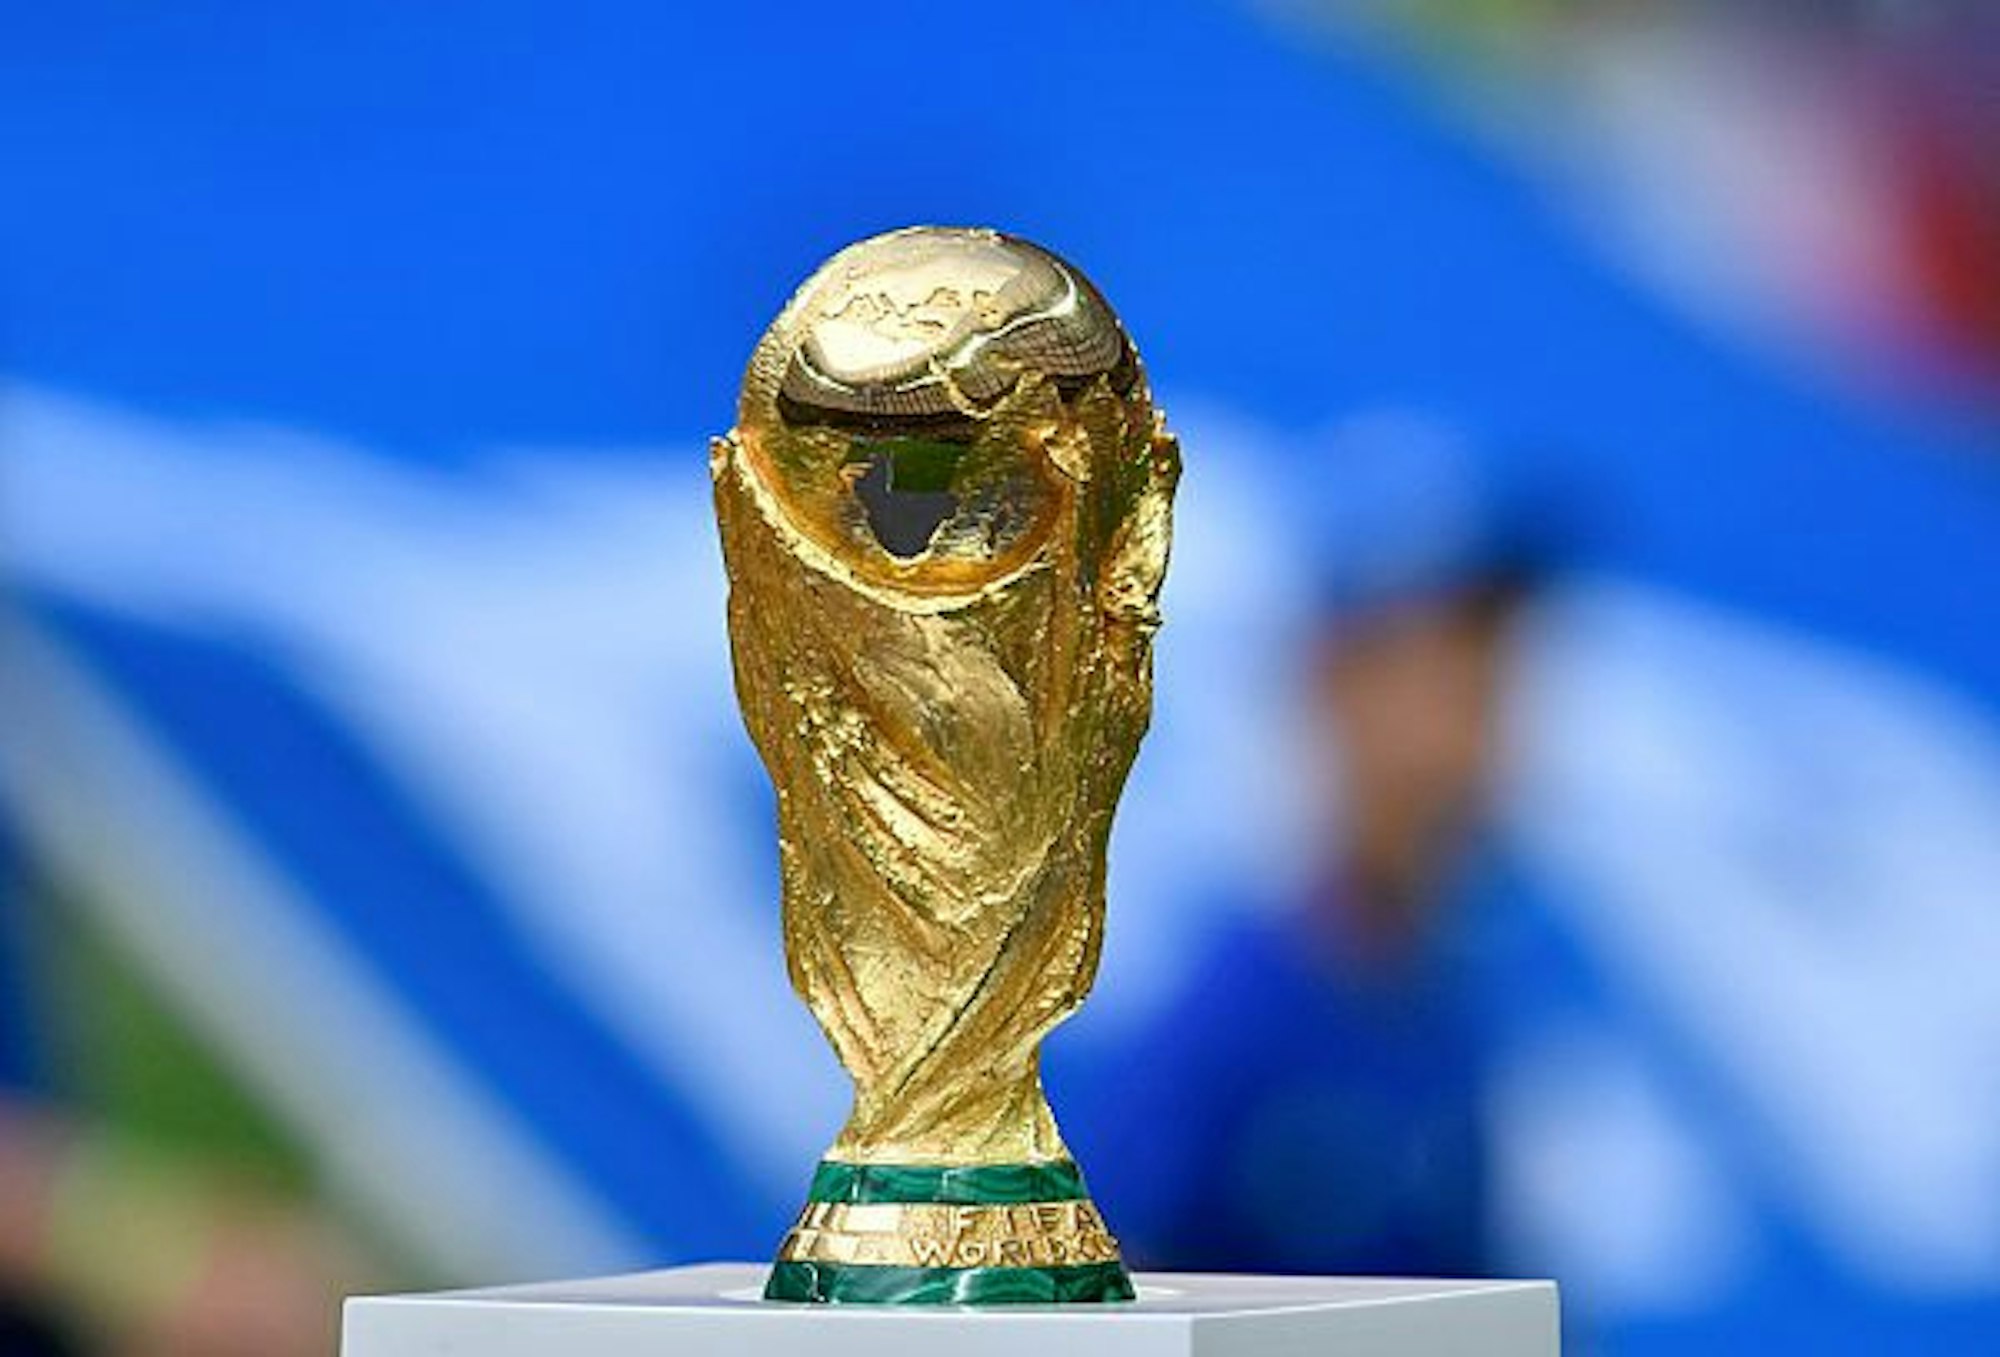 Der WM Pokal wird auf einem kleinen Podest ausgestellt.